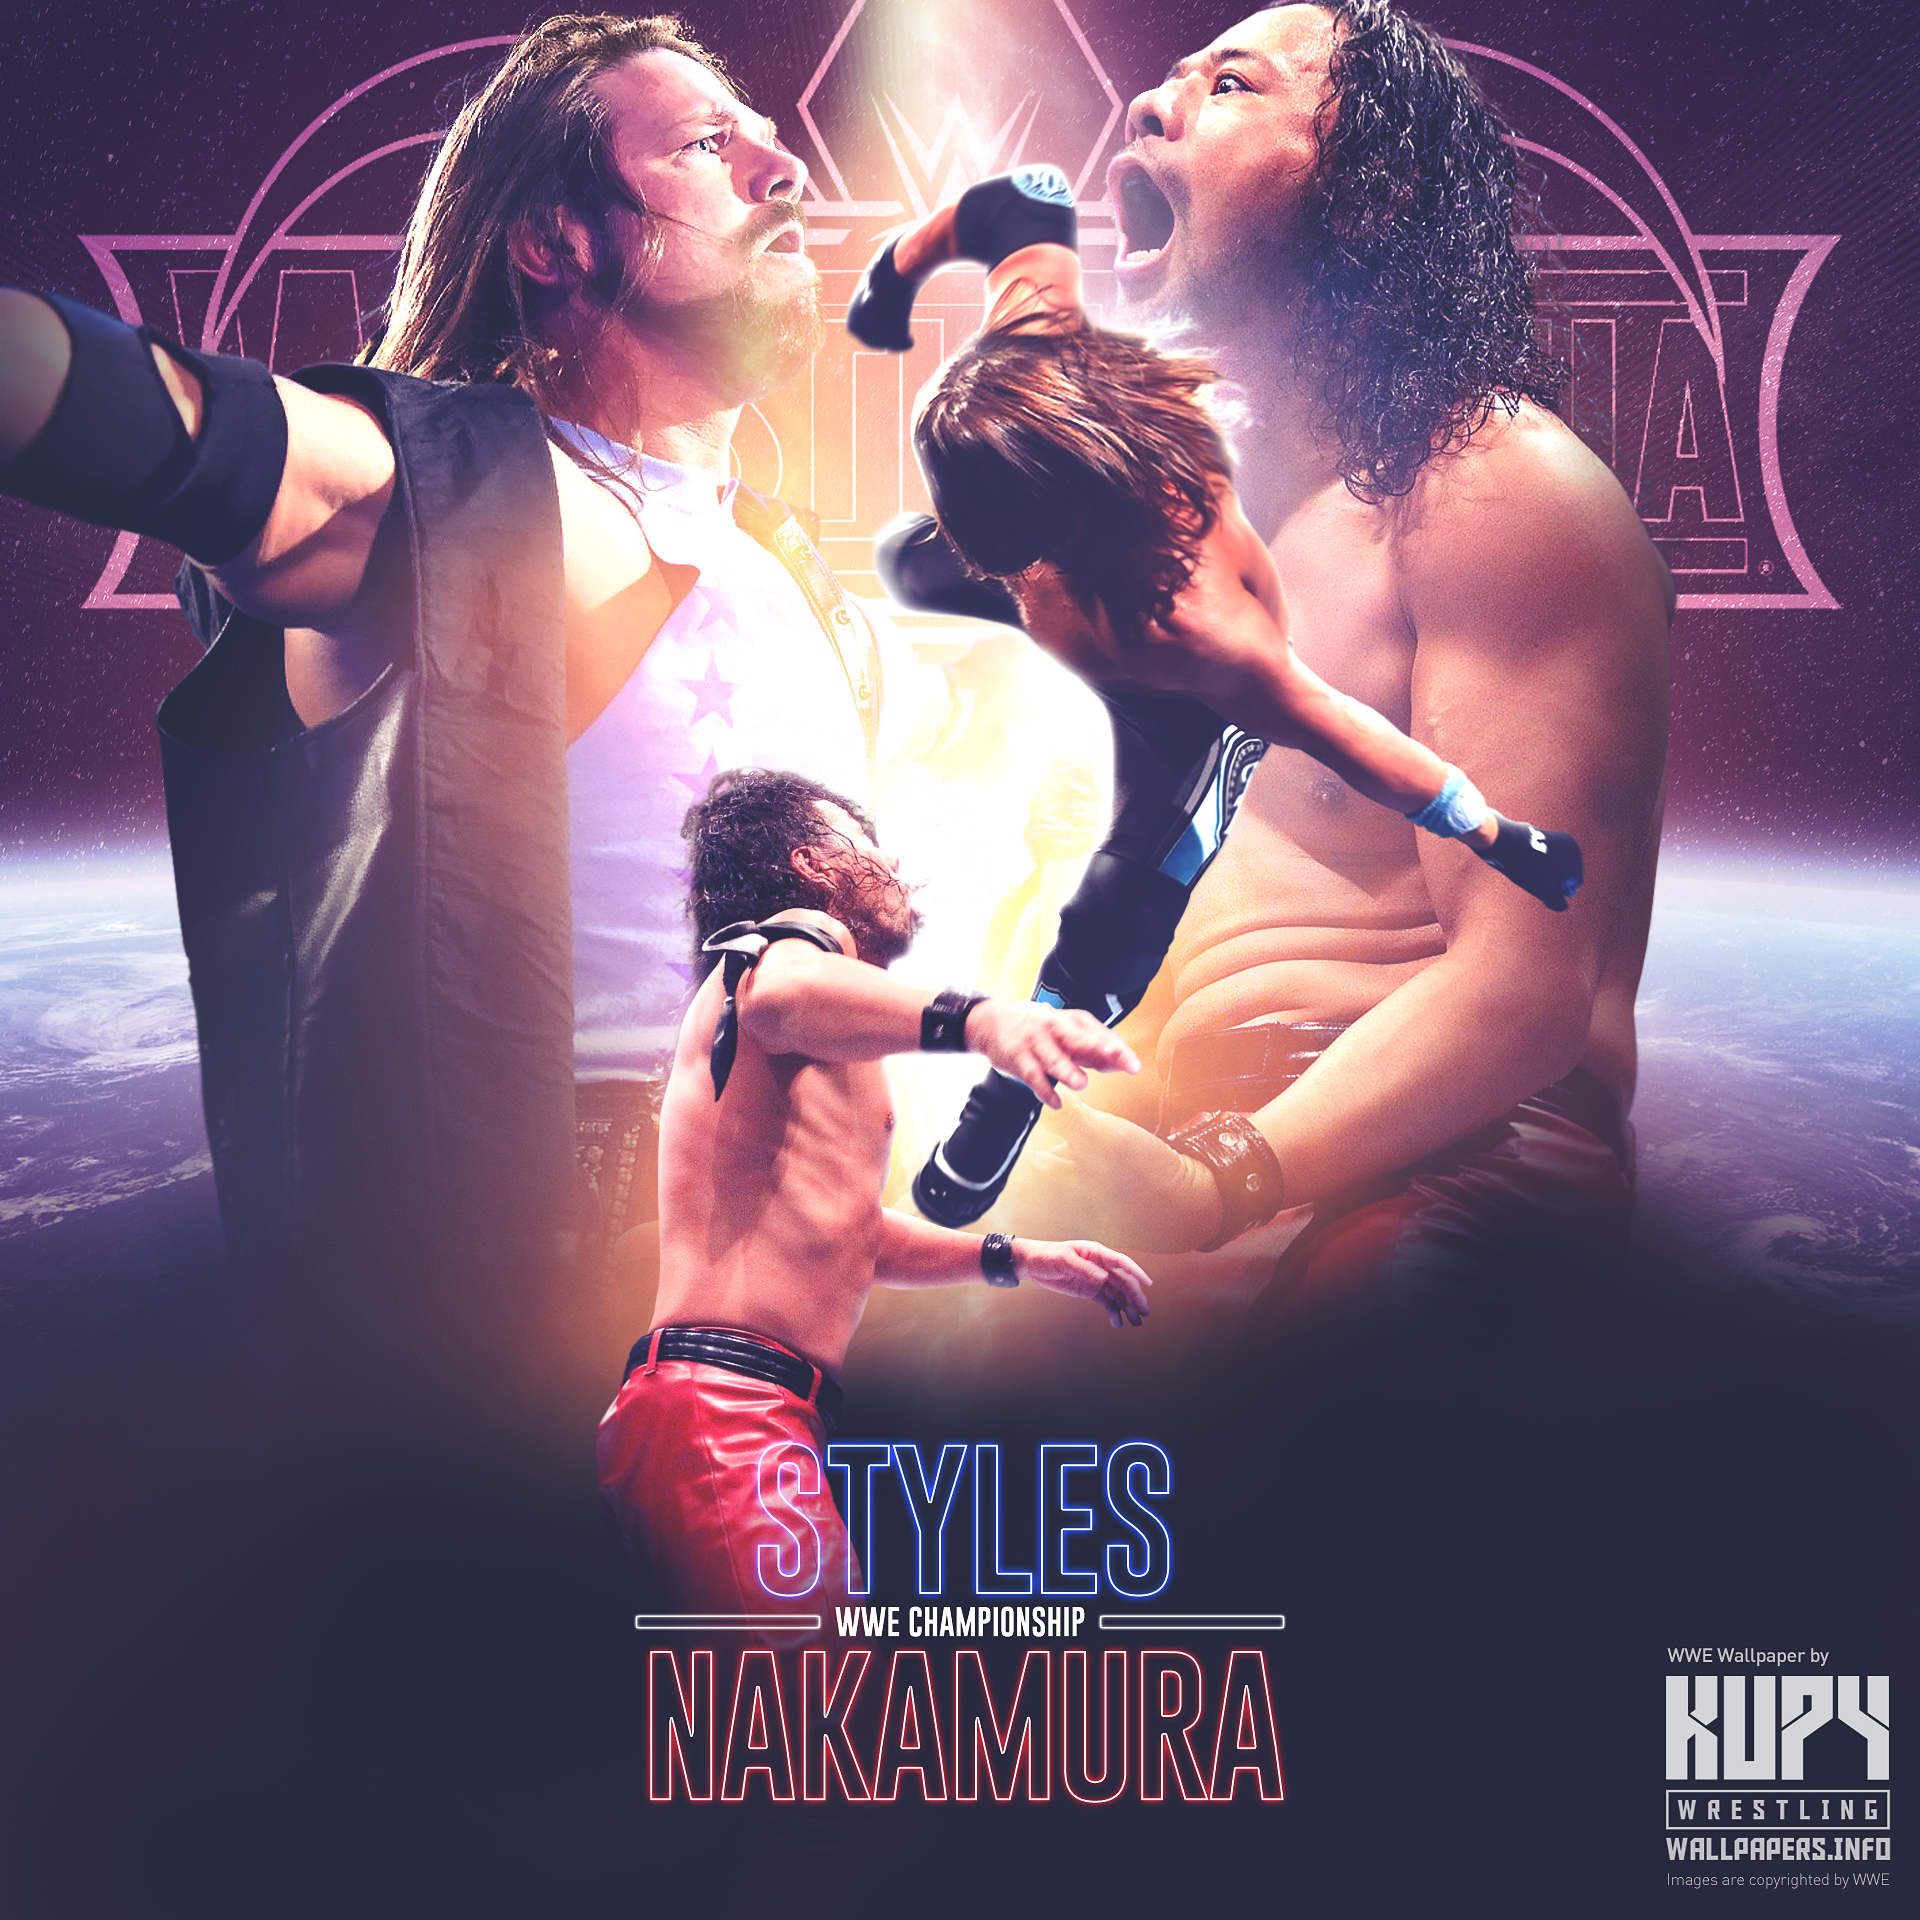 Road to WrestleMania 34: Shinsuke Nakamura vs. AJ Styles WWE Championship  poster & wallpaper! - Kupy Wrestling Wallpapers